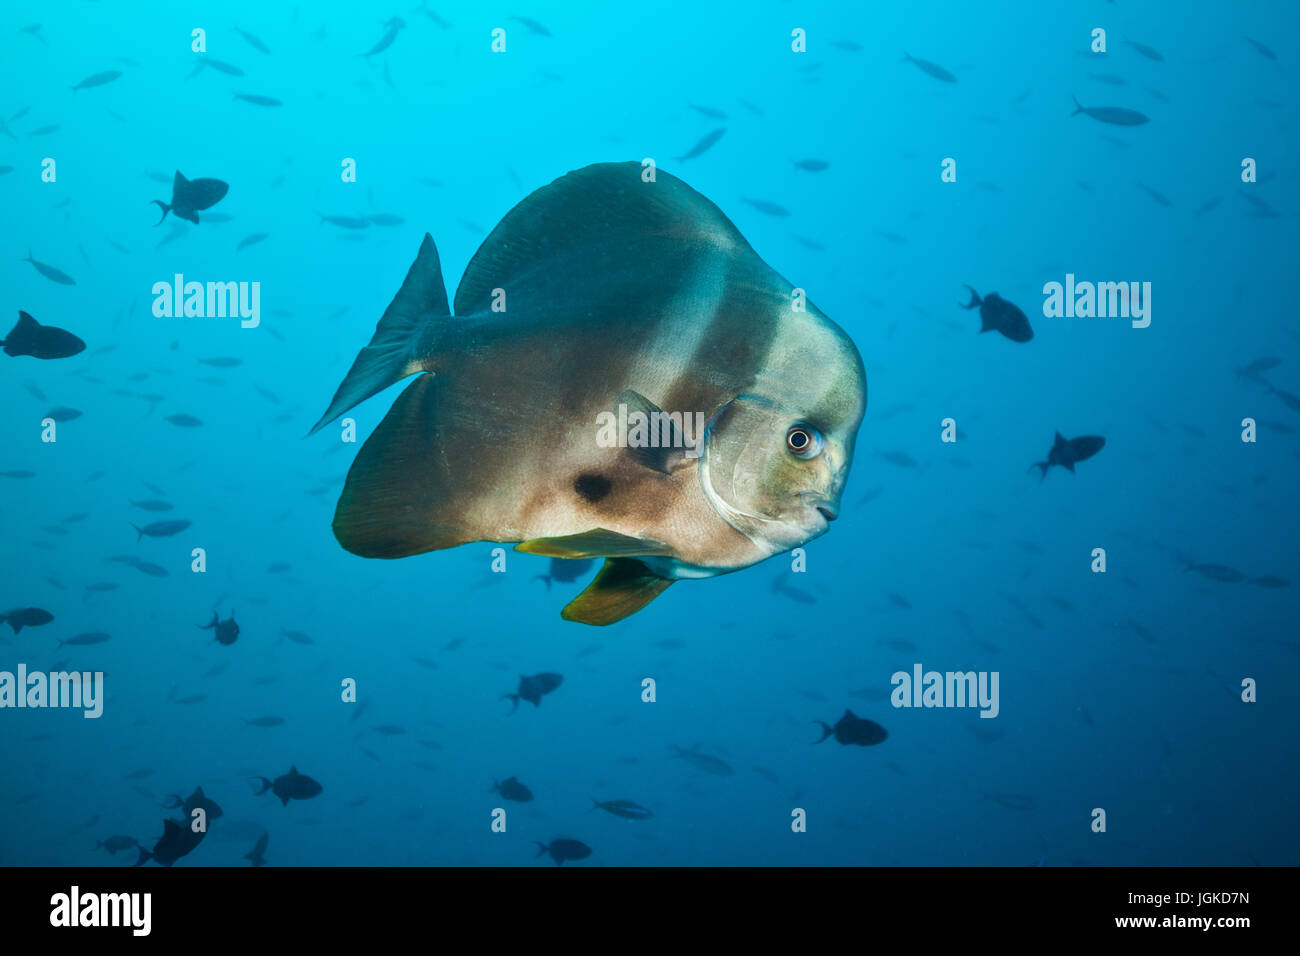 Grande pesce piatto fluttuante nel mare blu profondo, sagome di pesci di piccole dimensioni sullo sfondo Foto Stock